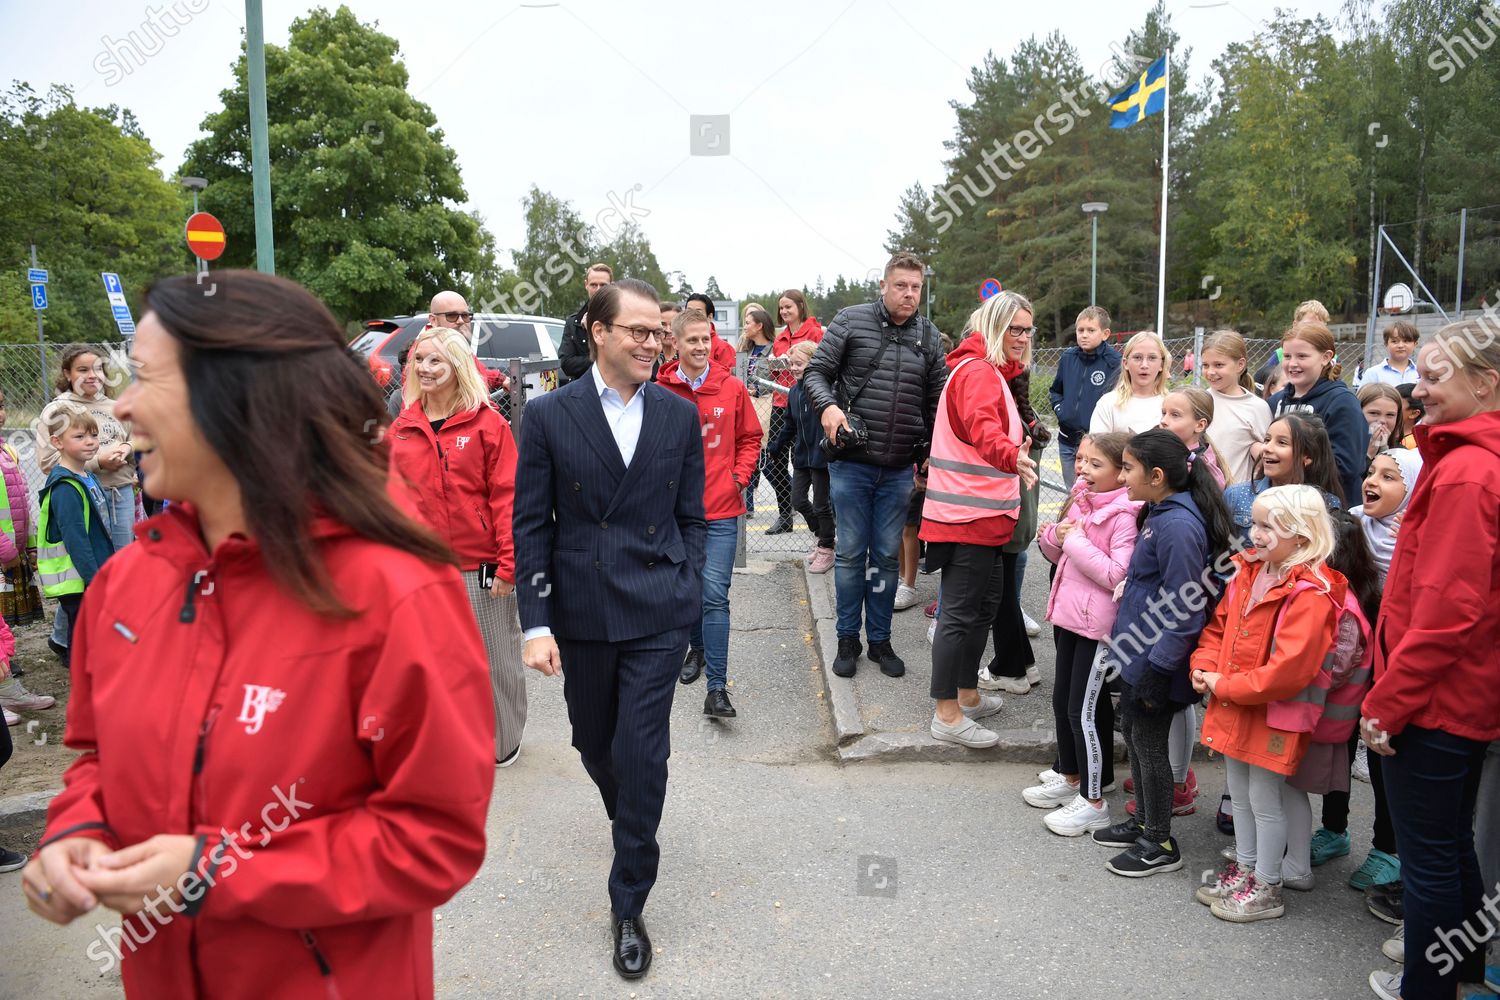 prince-daniel-visit-to-the-british-junior-primary-eskilstuna-sweden-shutterstock-editorial-10778401q.jpg